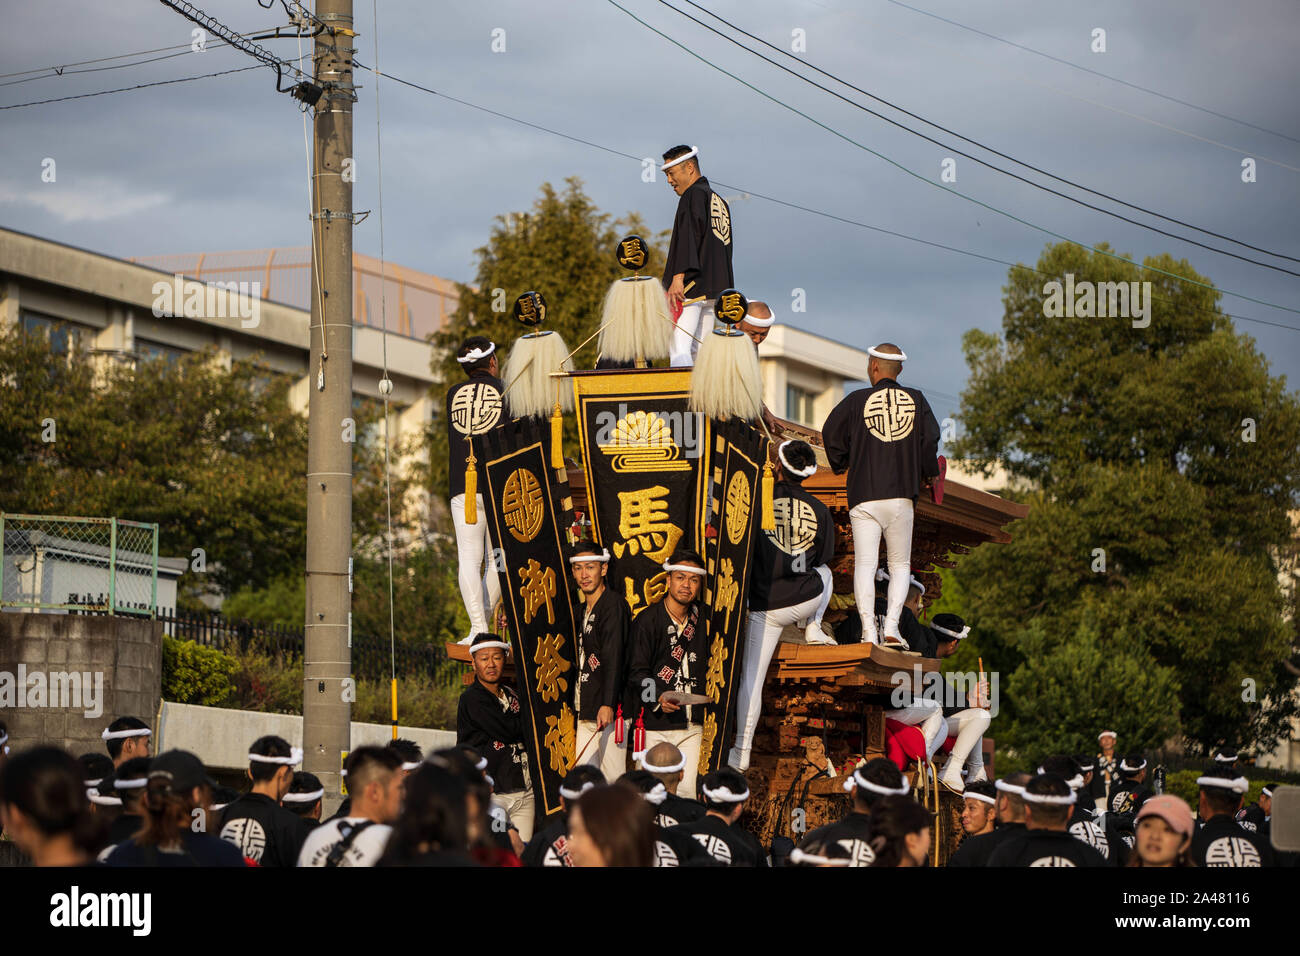 Kumatori, Japan - October 6, 2019: Local leaders atop cart amid crowd at local danjiri festival Stock Photo